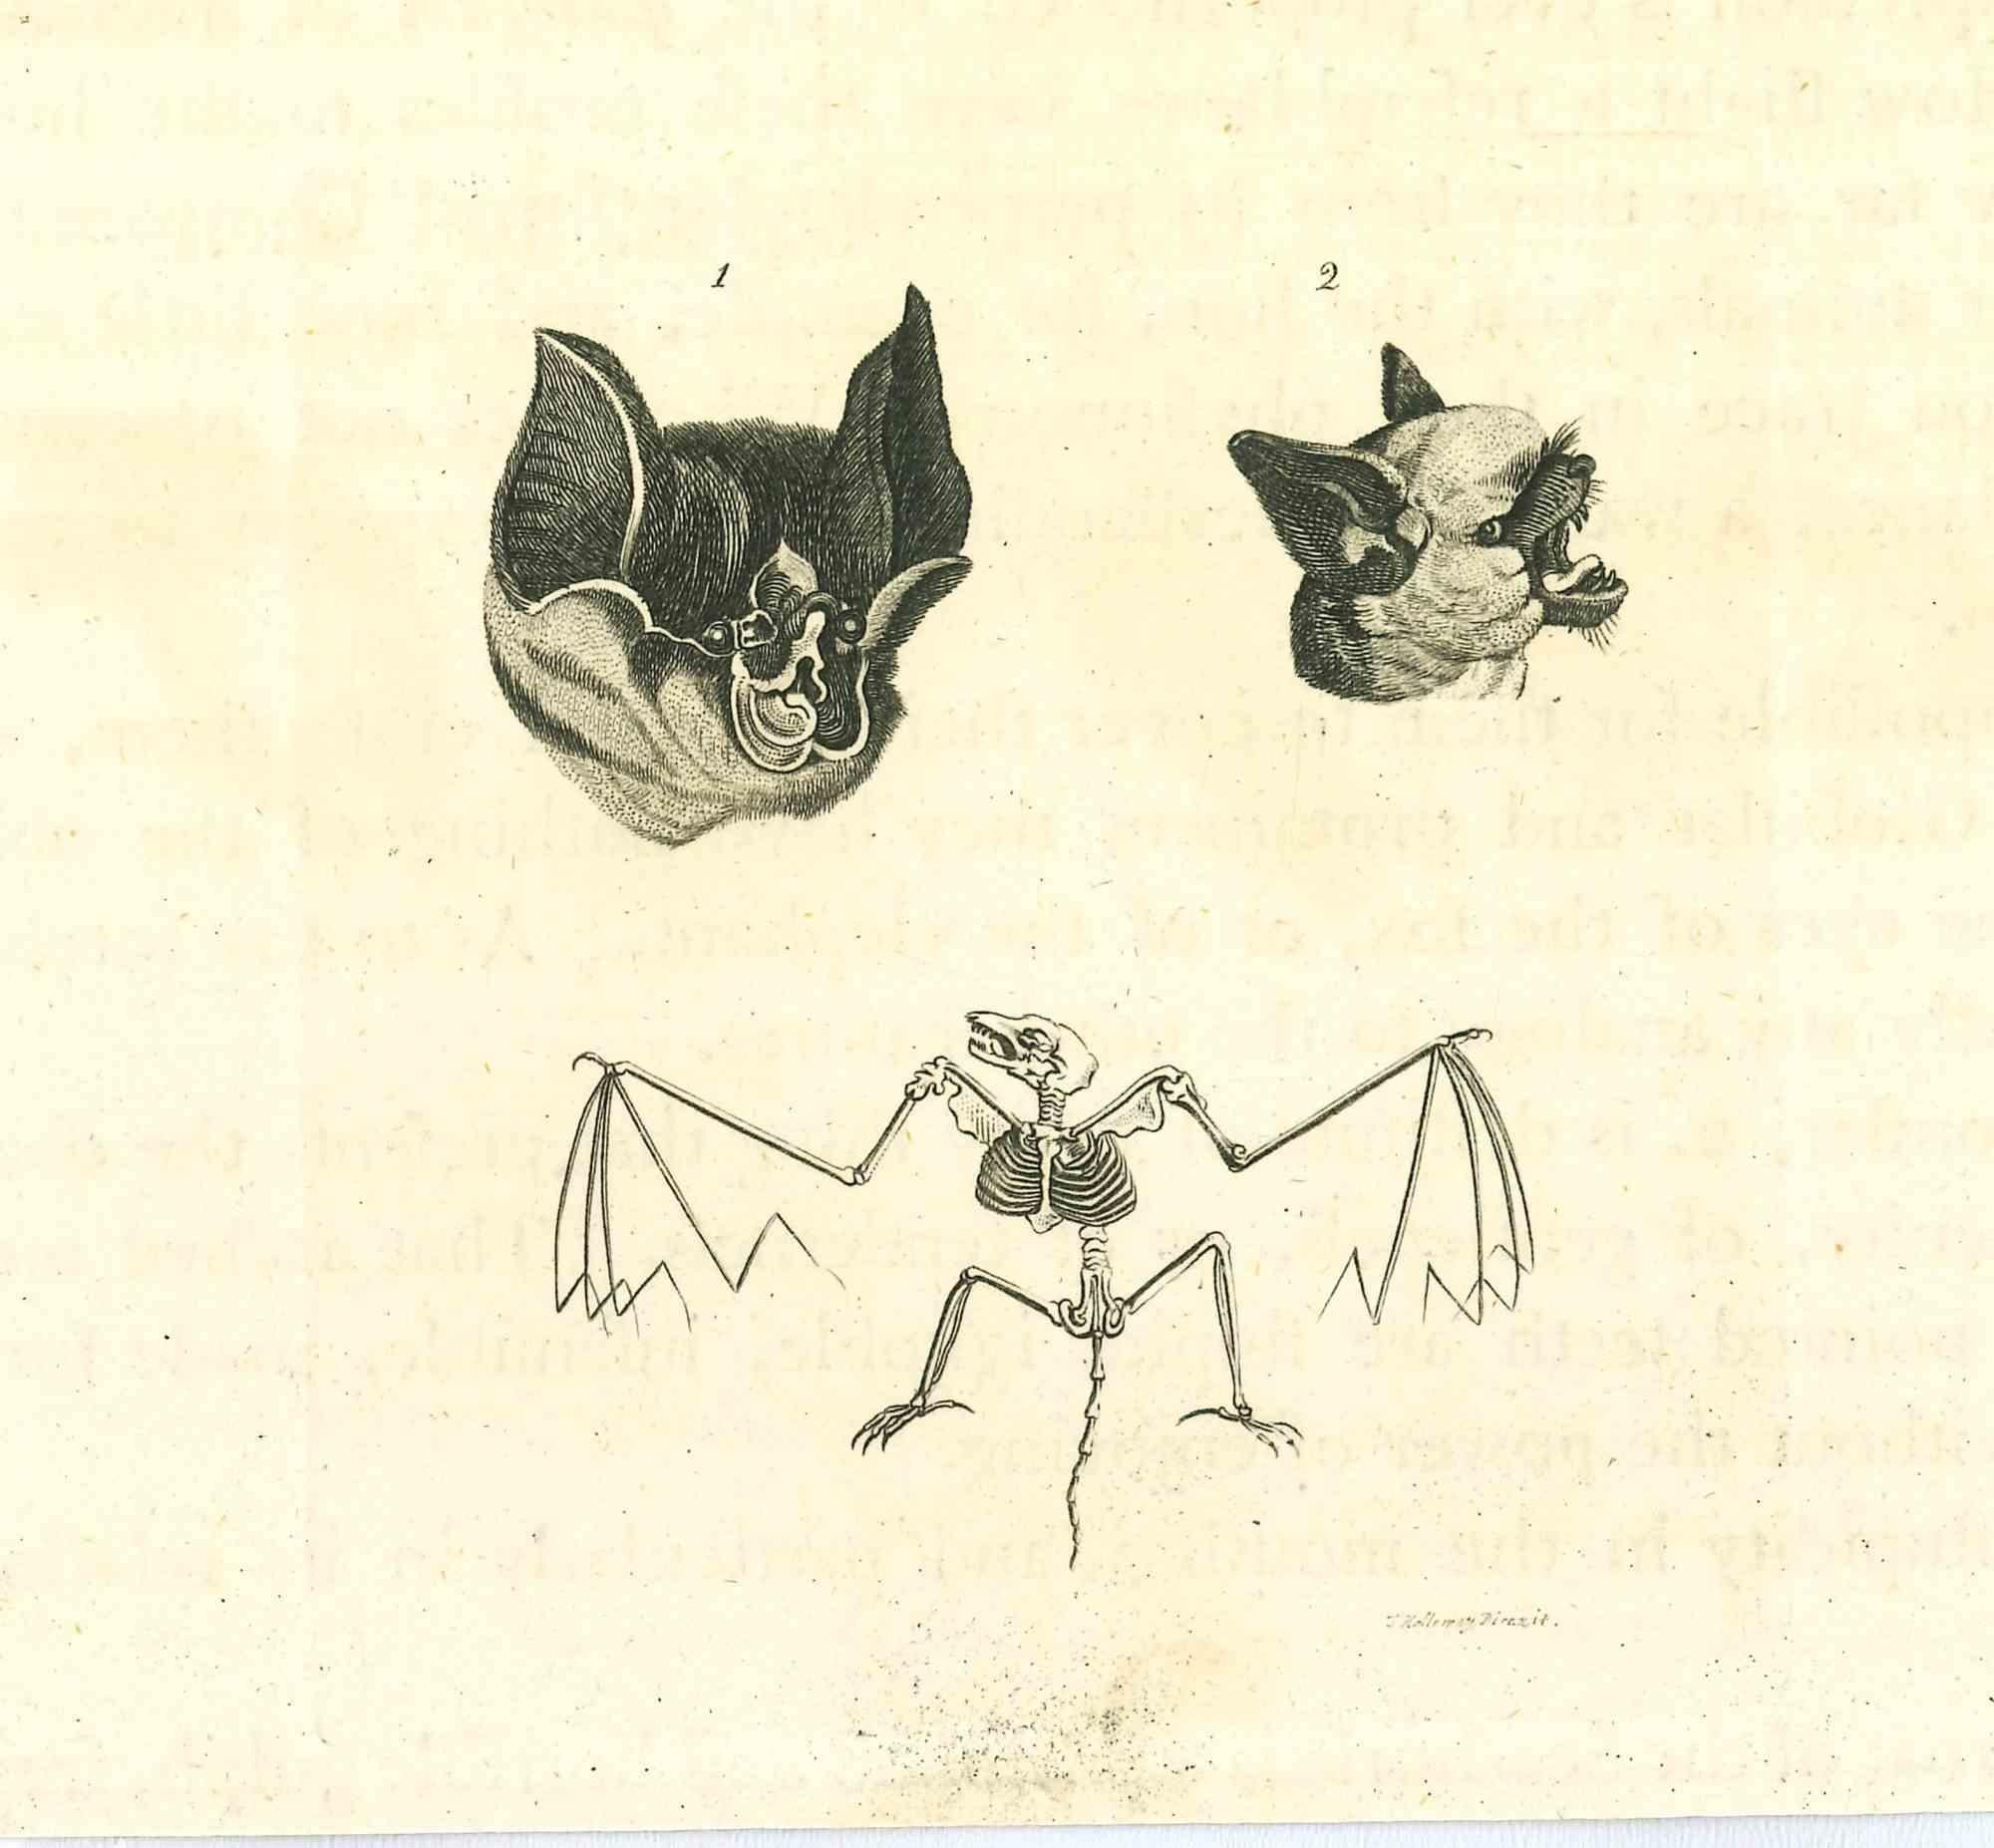 Die Physiognomie - Die Fledermäuse ist eine Originalradierung von Thomas Holloway für Johann Caspar Lavaters "Essays on Physiognomy, Designed to Promote the Knowledge and the Love of Mankind", London, Bensley, 1810. 

Mit der Radierung eines